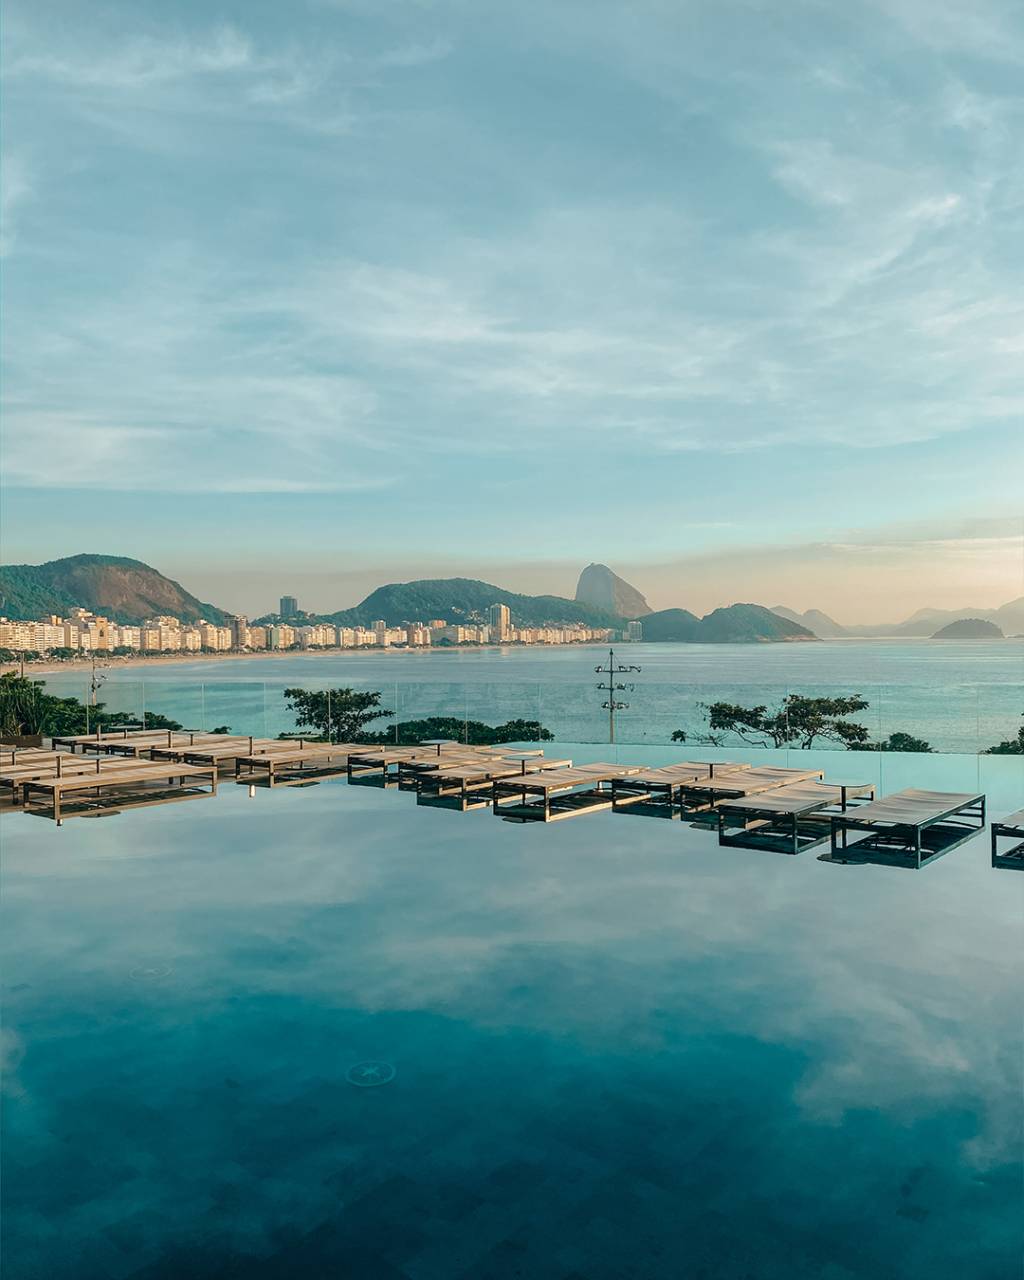 Foto da piscina do Hotel Fairmont com a vista da praia de Copacabana